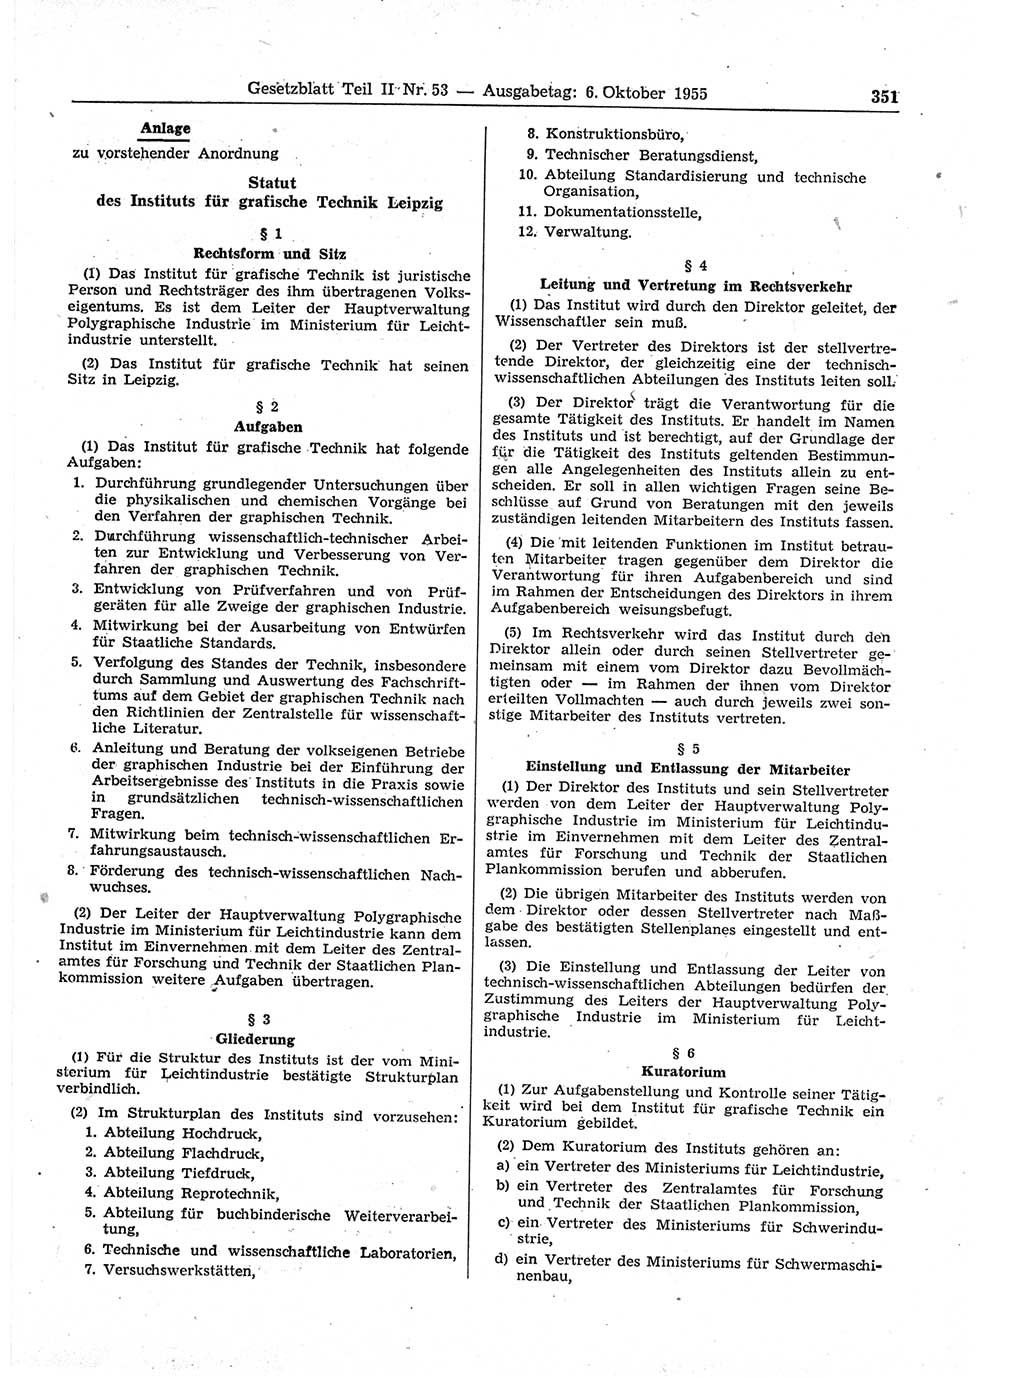 Gesetzblatt (GBl.) der Deutschen Demokratischen Republik (DDR) Teil ⅠⅠ 1955, Seite 351 (GBl. DDR ⅠⅠ 1955, S. 351)